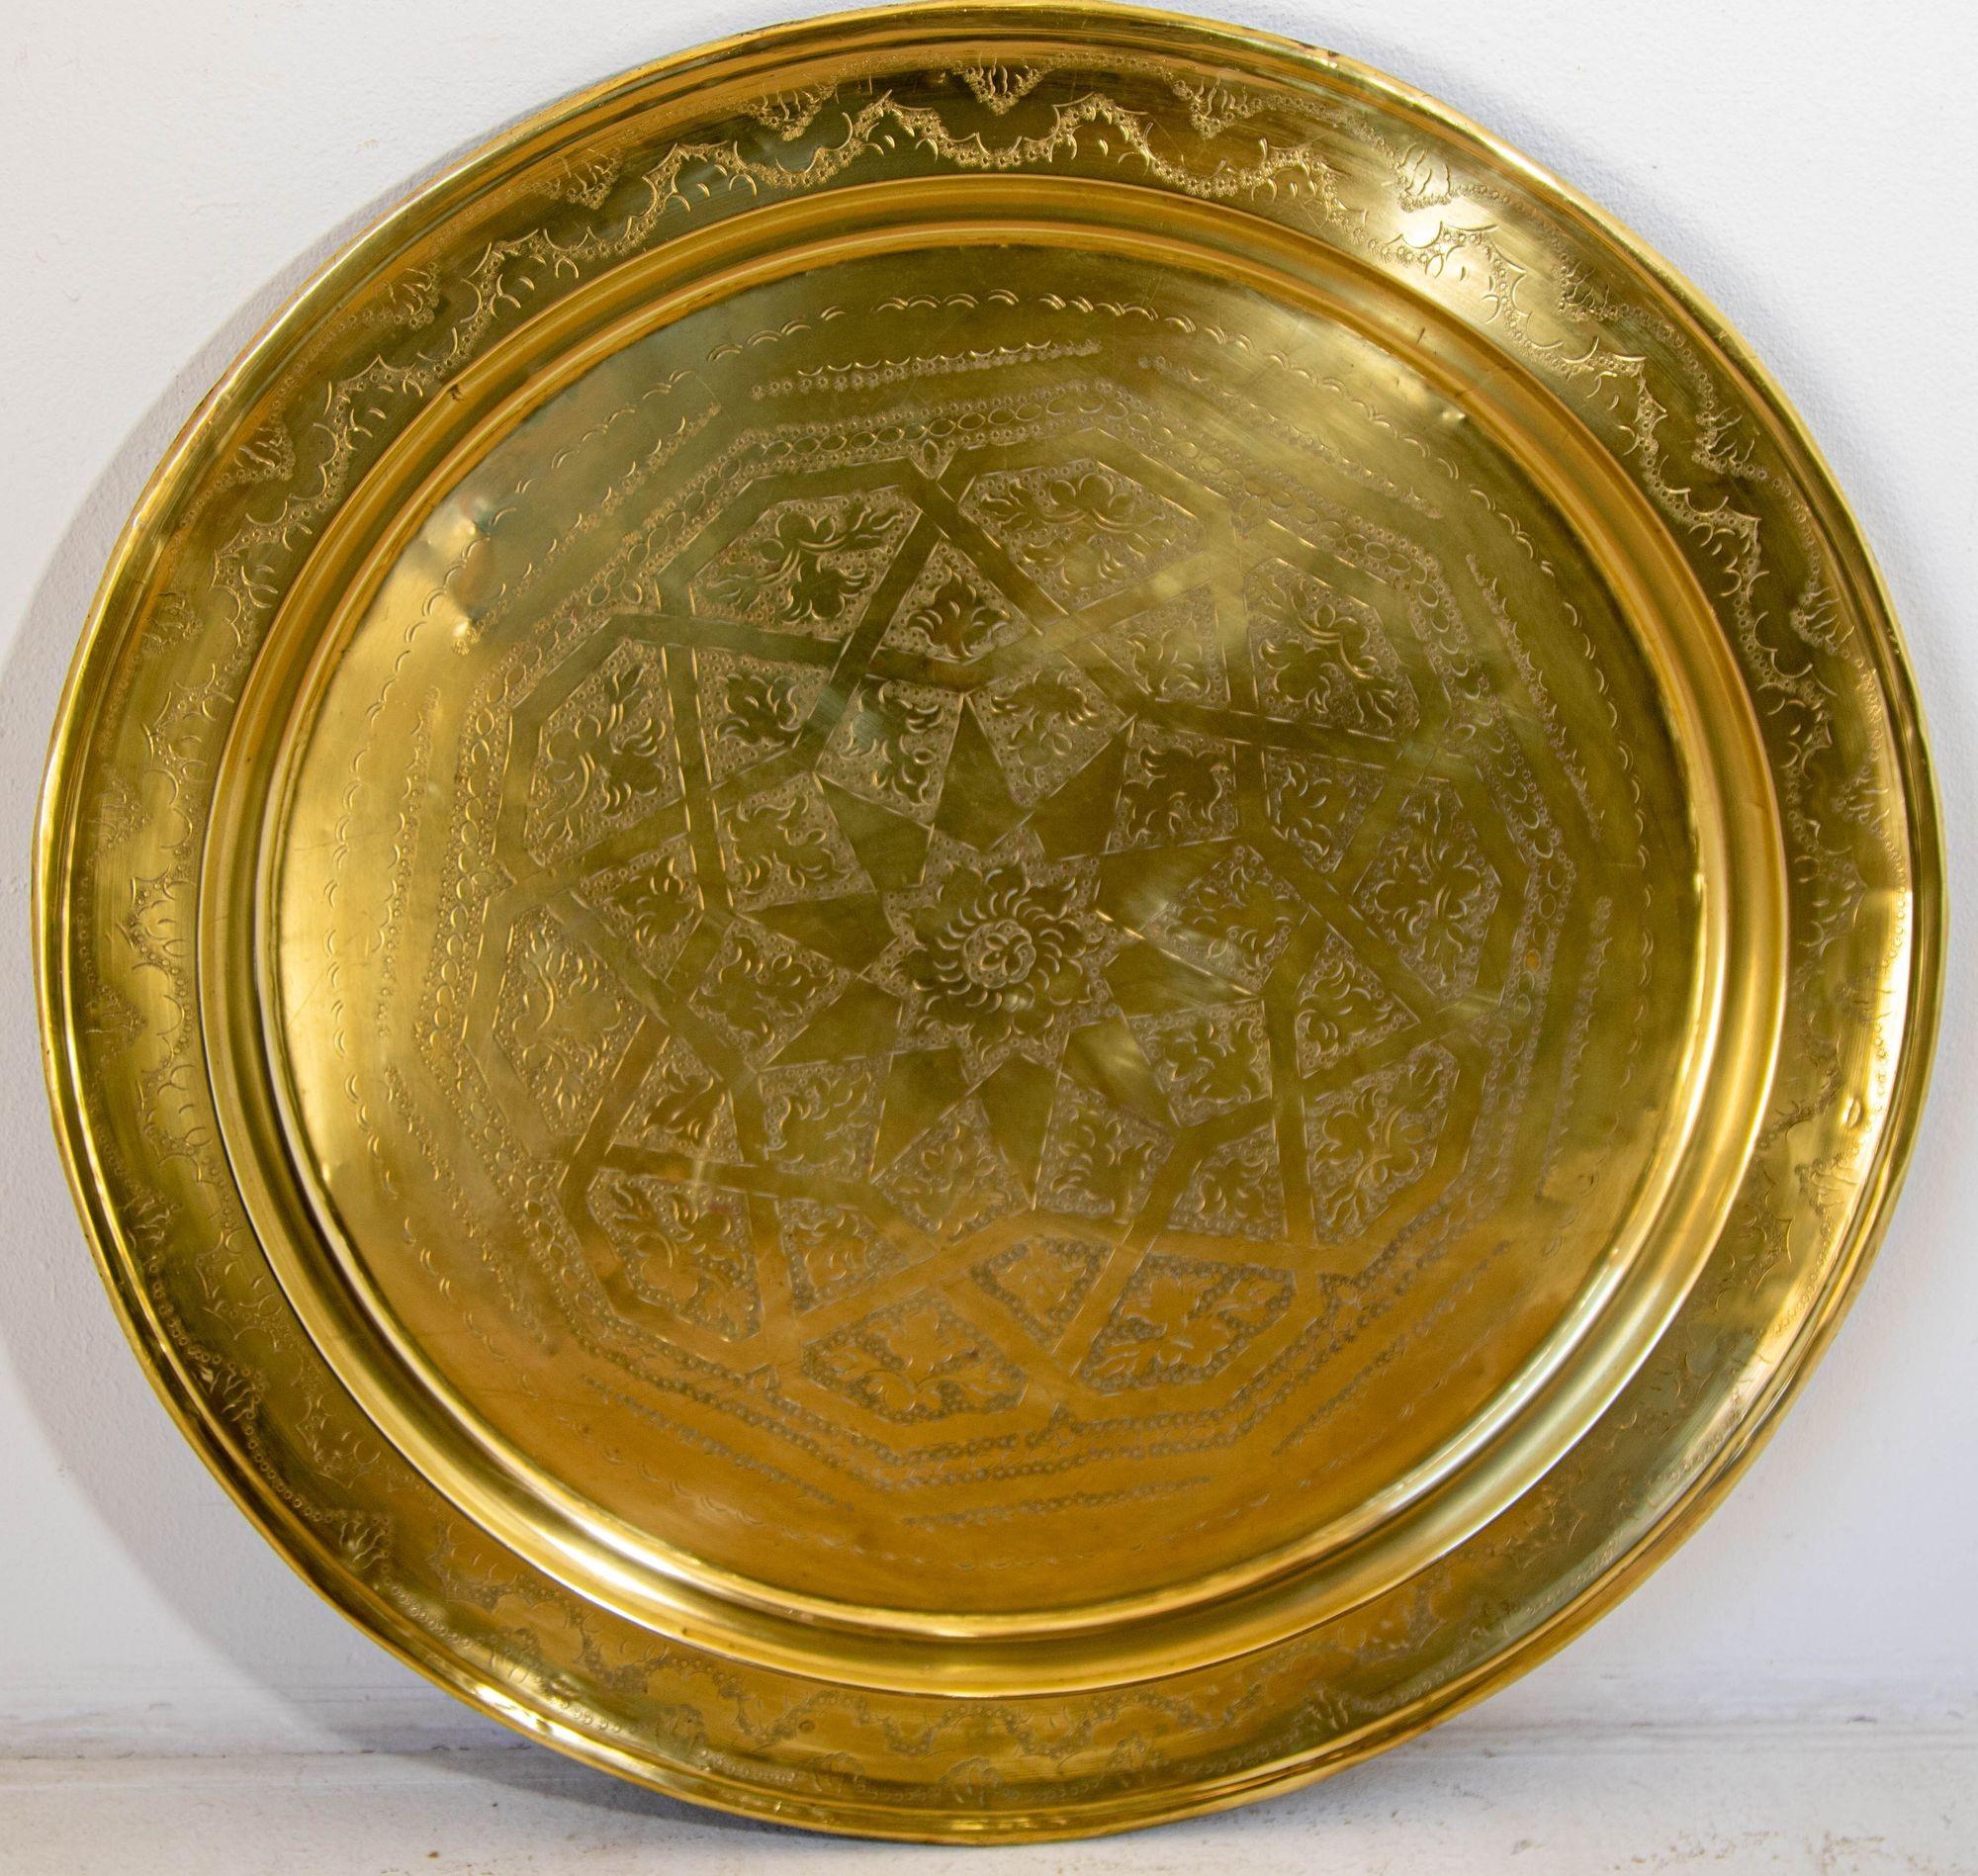 1940's Antique Moroccan Large Polished Round Brass Tray Platter 30 in. D.
Grand plateau marocain ancien en métal poli, rond et en laiton.
Plateau rond en métal décoratif poli en laiton avec des motifs très fins et complexes.
Finement martelés et